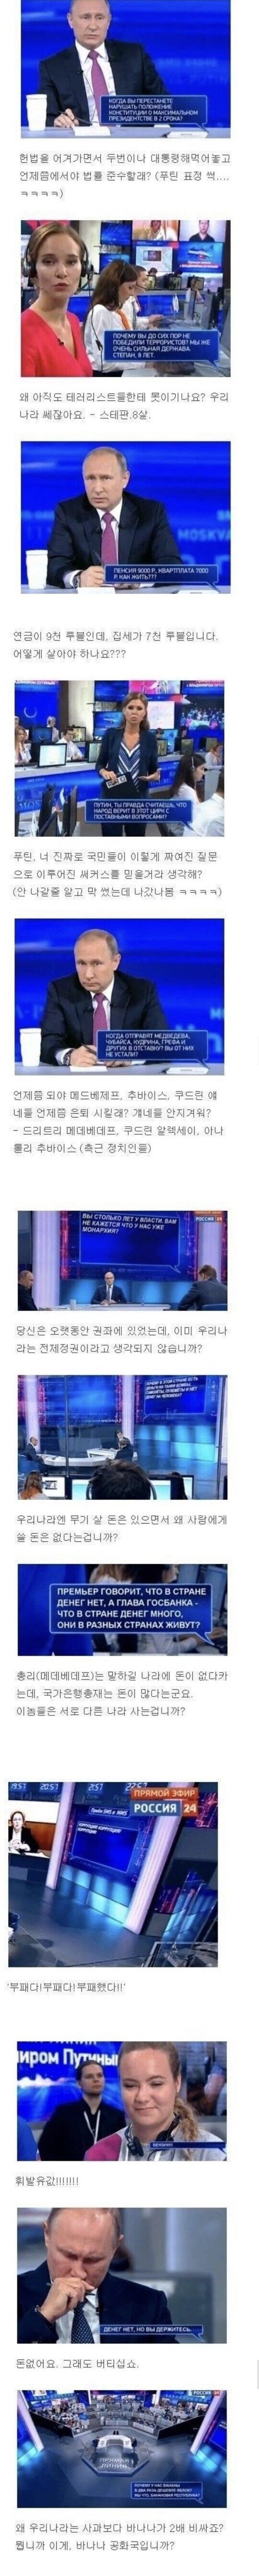 한국에 도입하면 시청률 90% 달성 가능한 프로그램.jpg